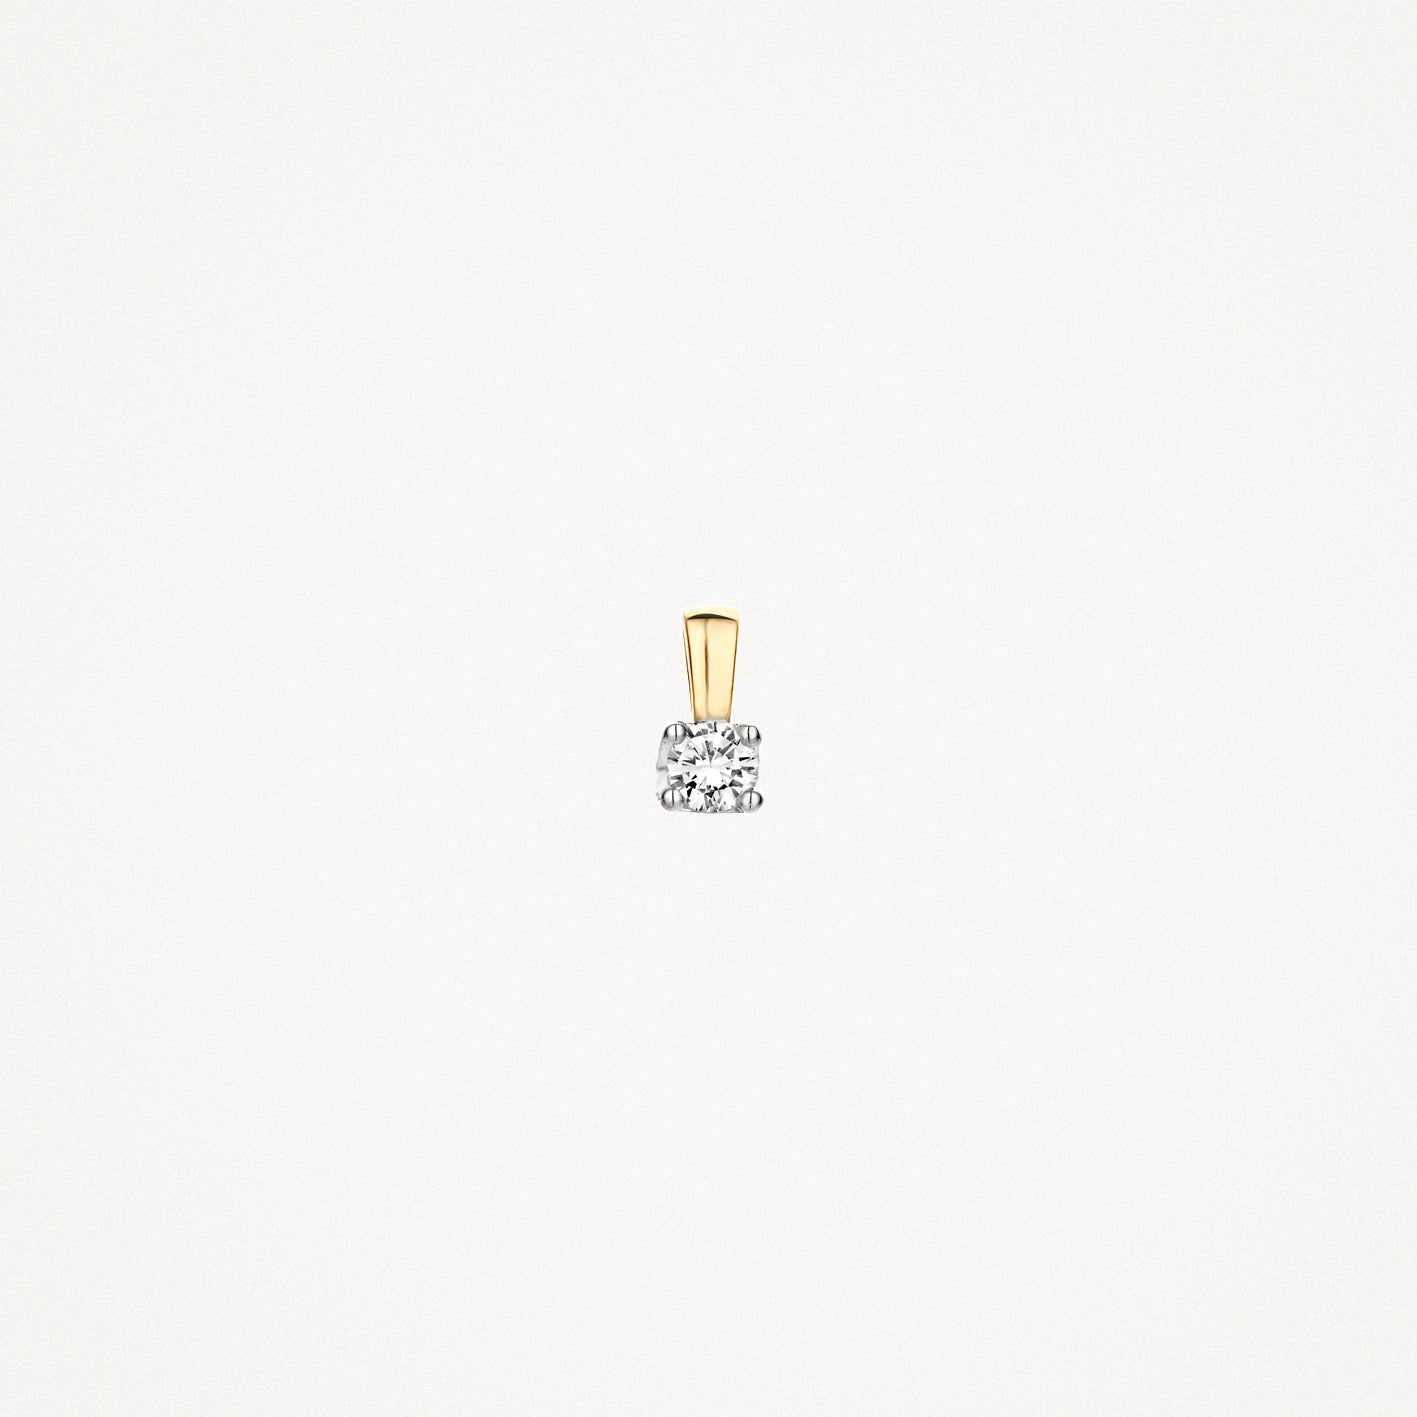 Diamond pendant 6601BDI - 14k Yellow and white gold